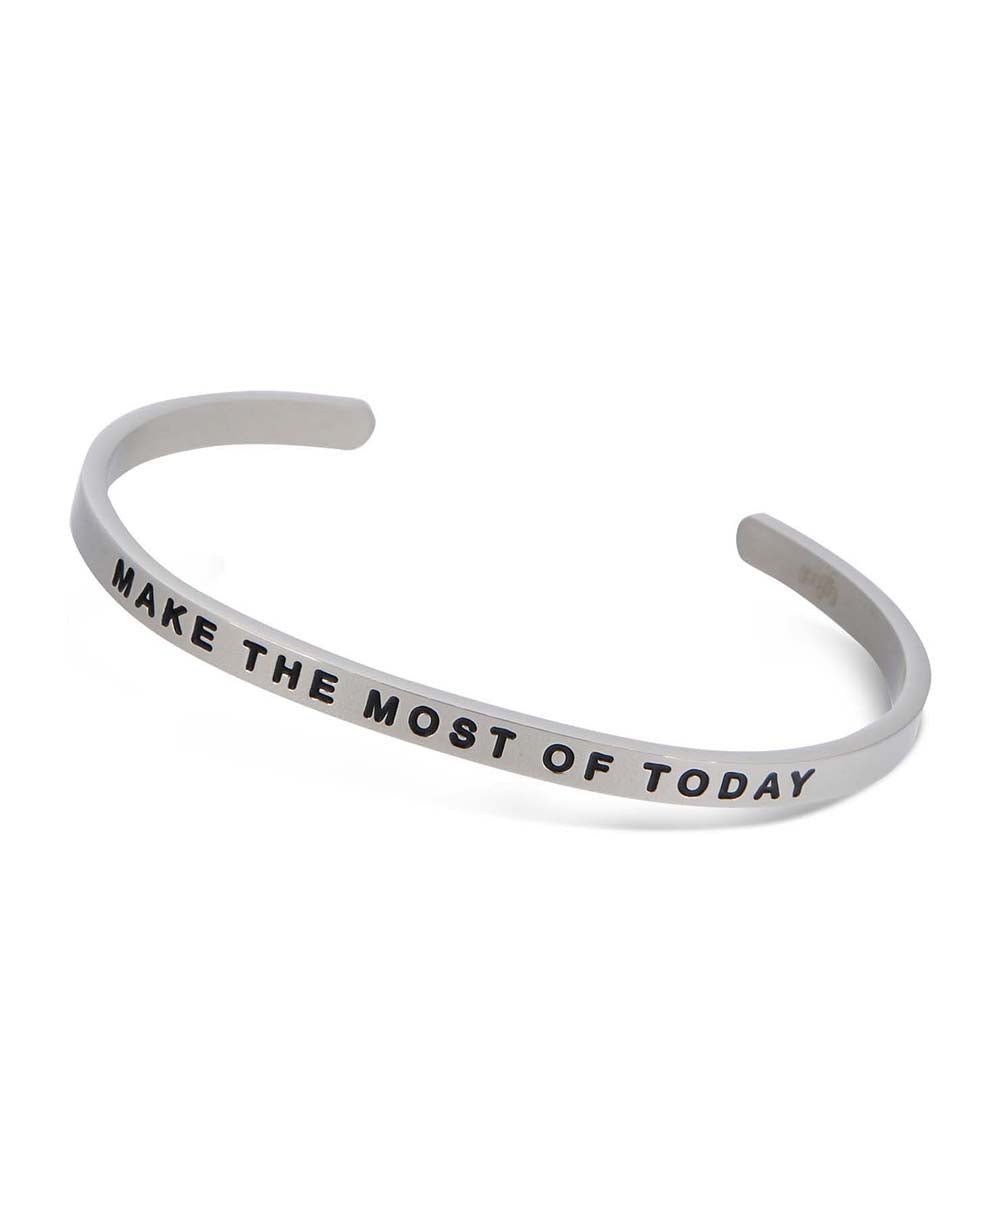 Make the Most of Today Inspirational Cuff Bracelet - Bracelets